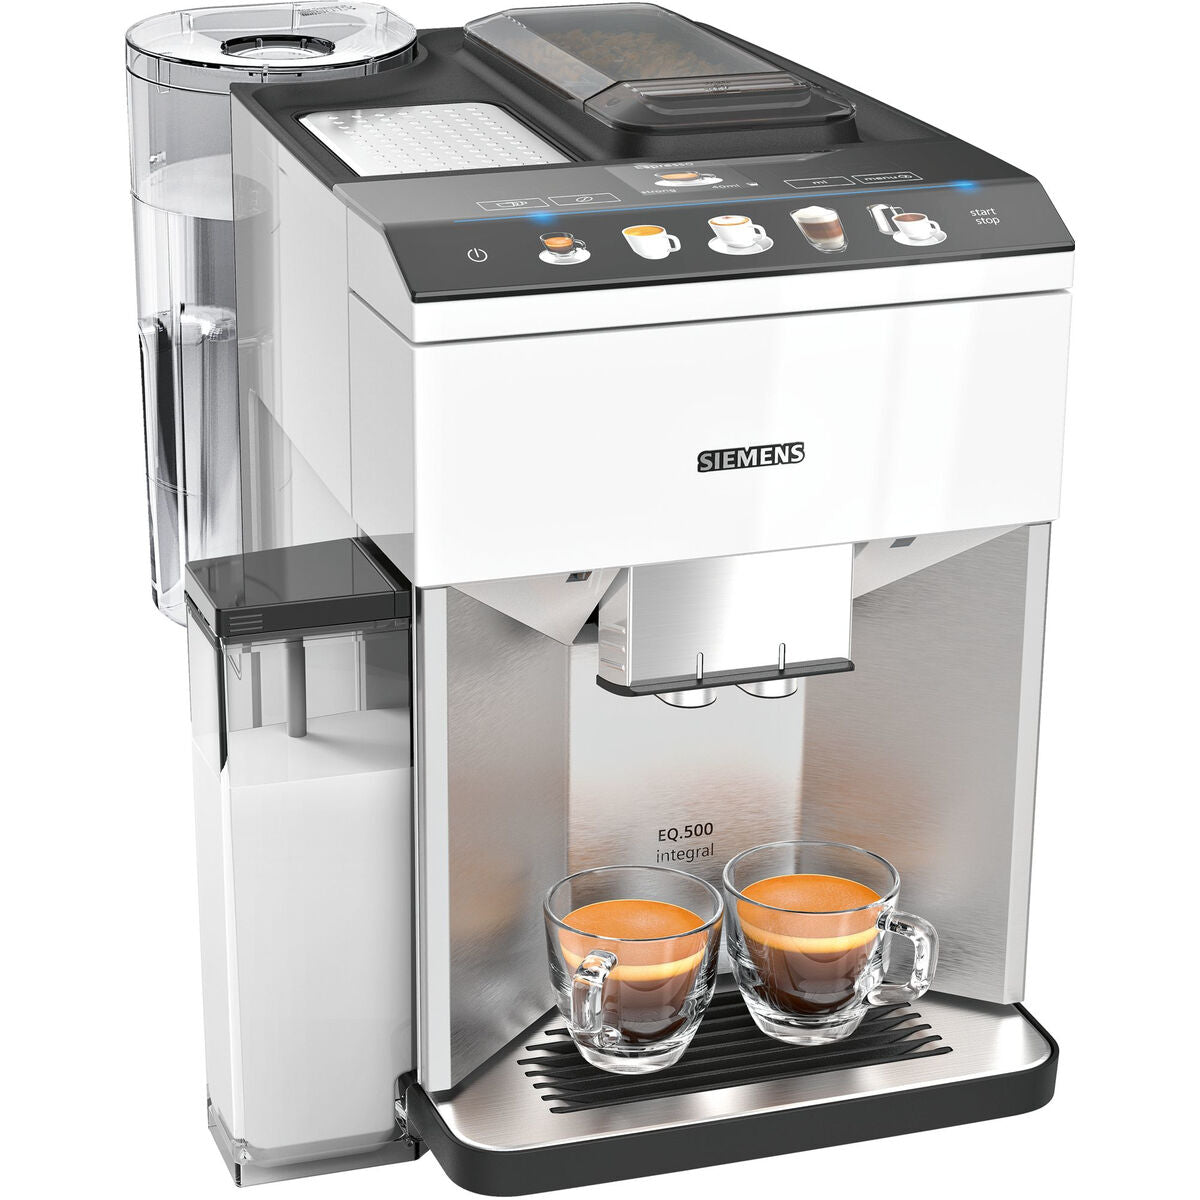 Superautomatische Kaffeemaschine Siemens AG TQ507R02 Weiß 1500 W 15 bar 2 Kopper 1,7 L